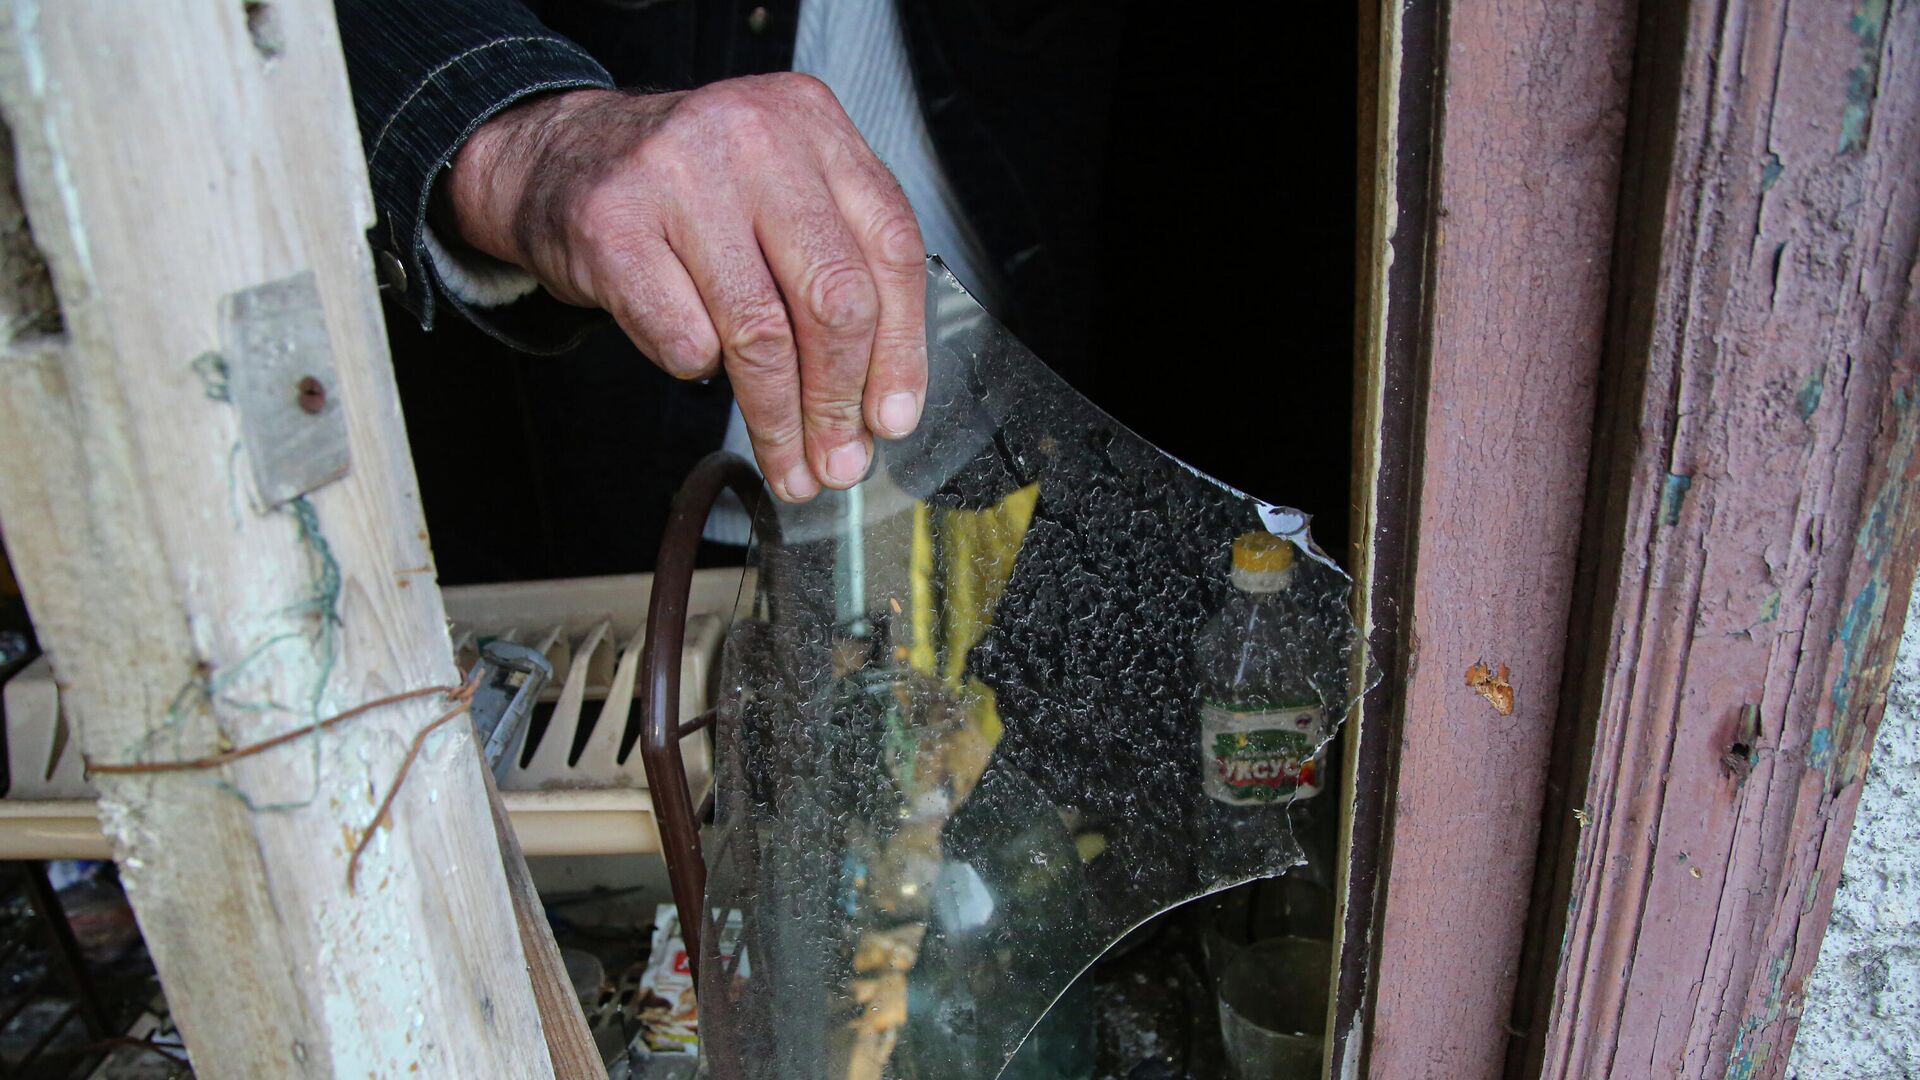 Местный житель из села Васильевка Донецкой области держит кусок разбитого стекла из разбитого окна жилого дома, пострадавшего в результате обстрела - РИА Новости, 1920, 10.04.2021